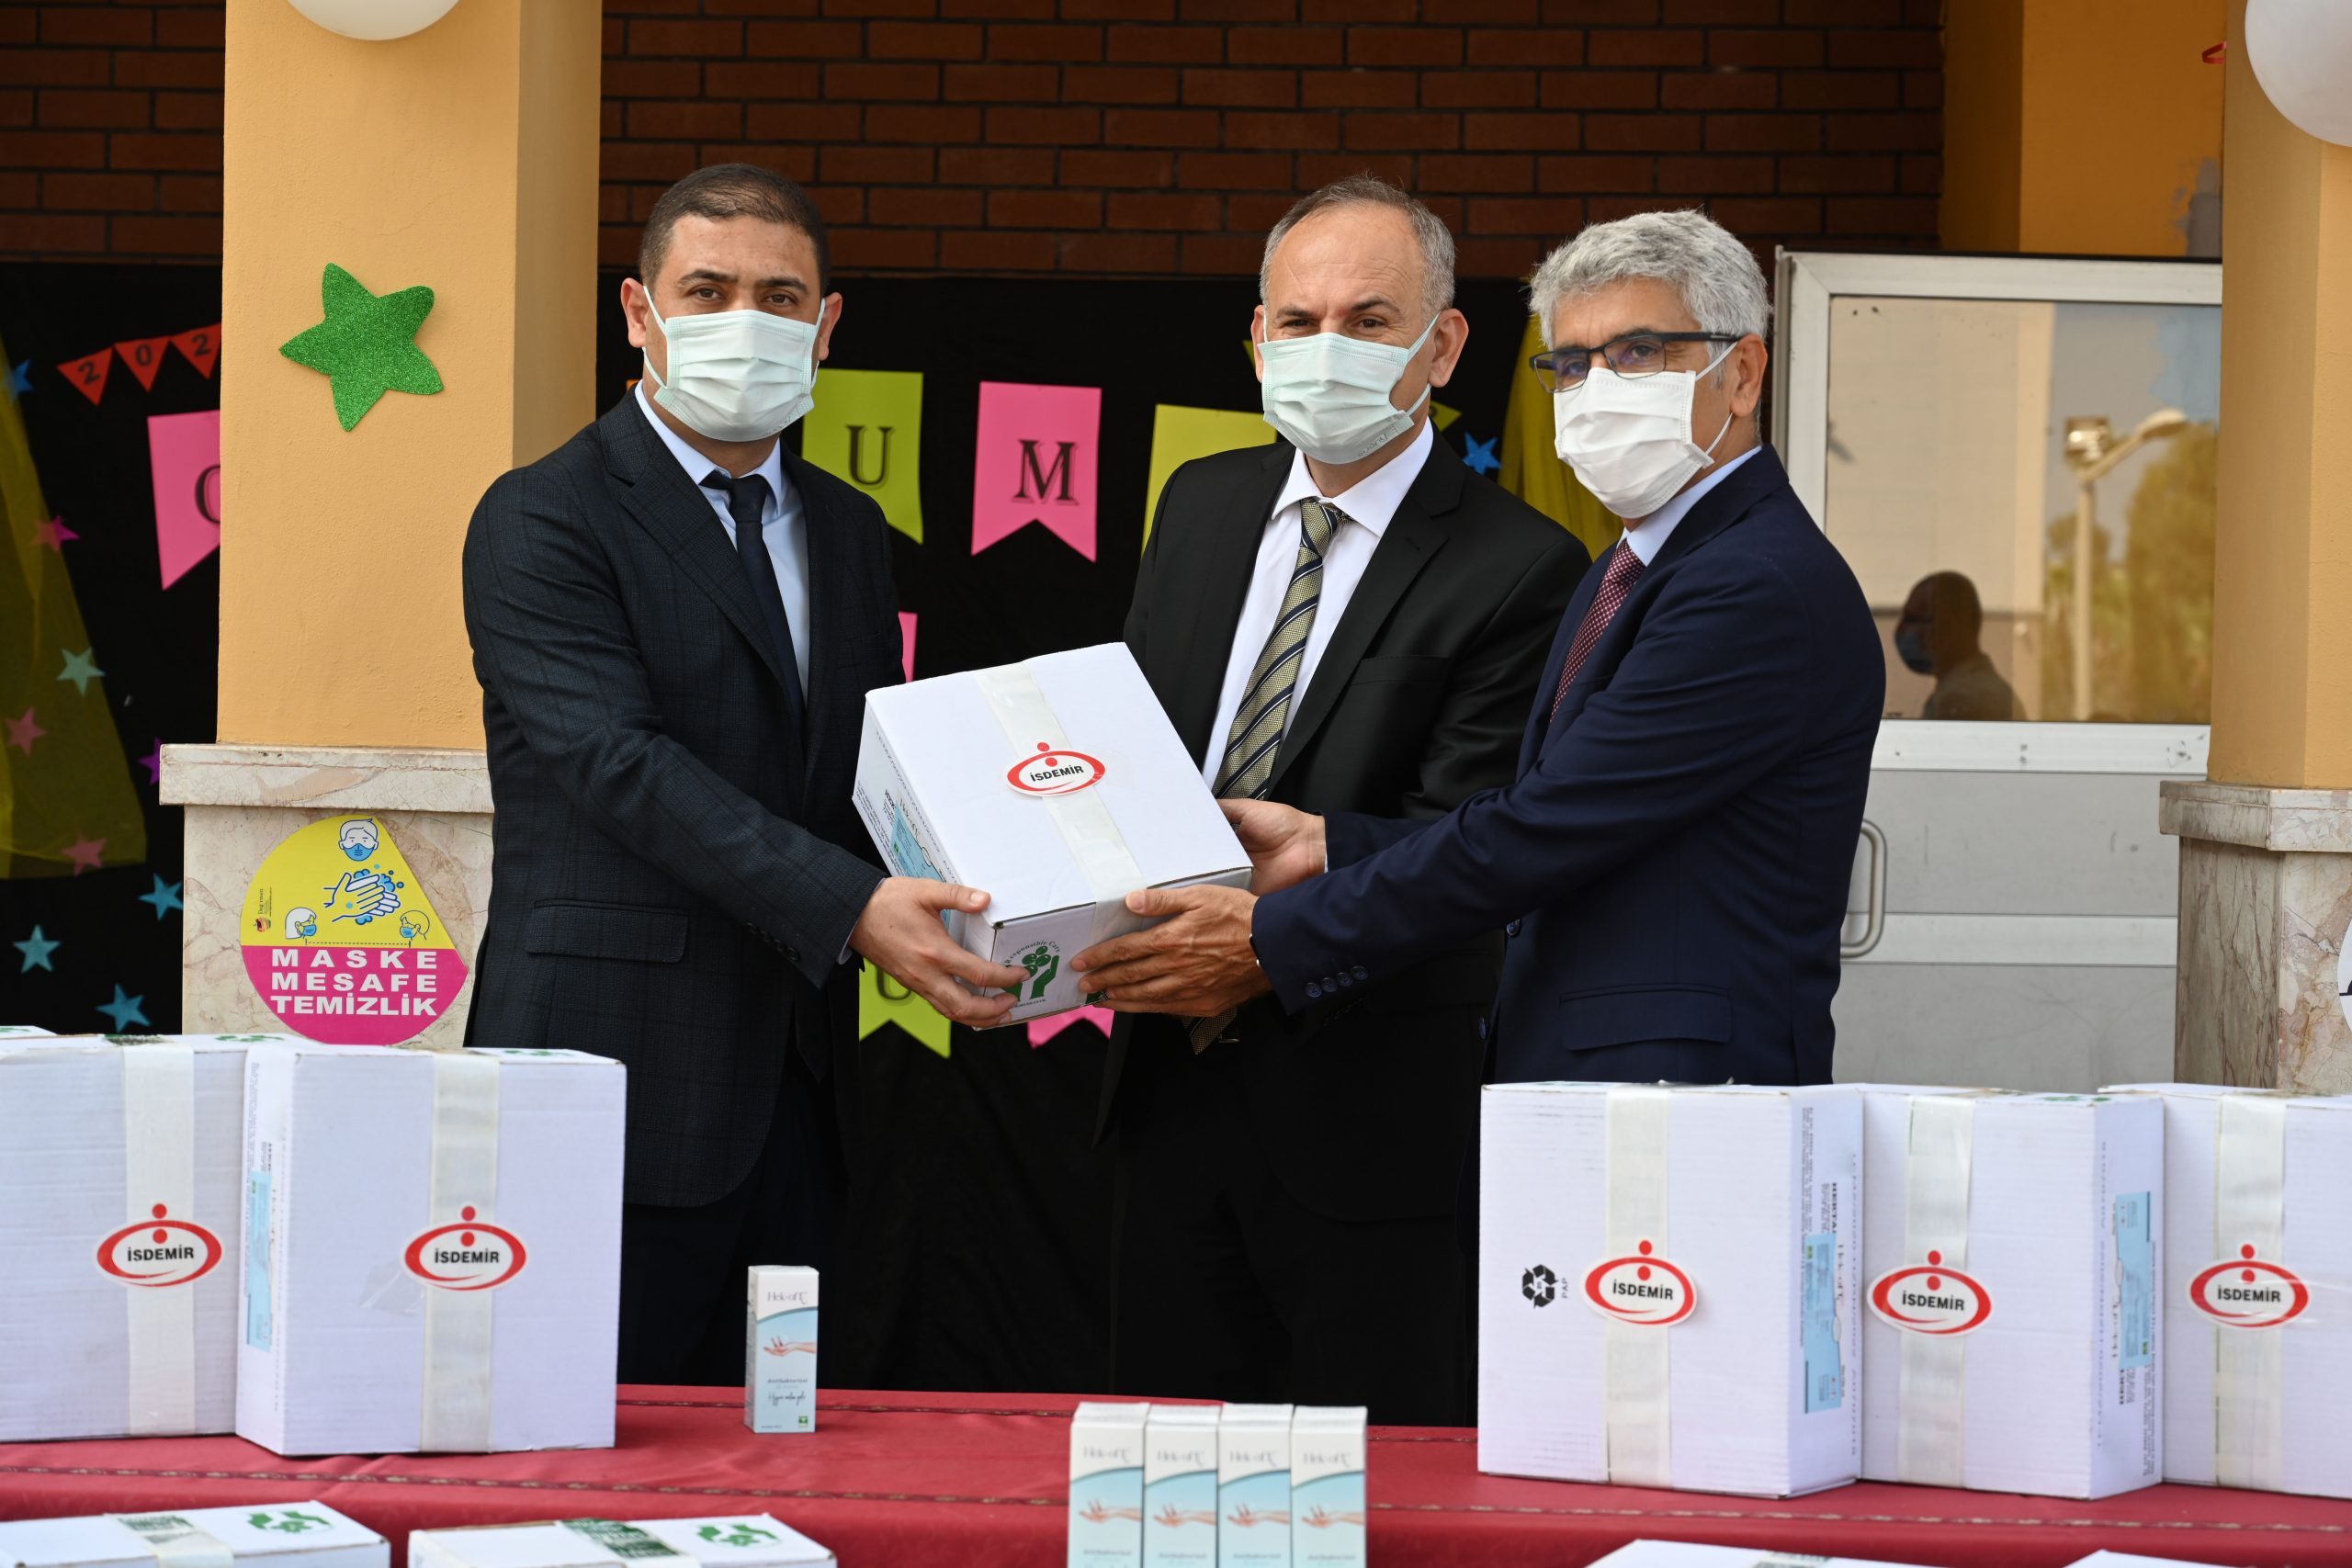 İsdemir’den bölge okullarına dezenfektan desteği